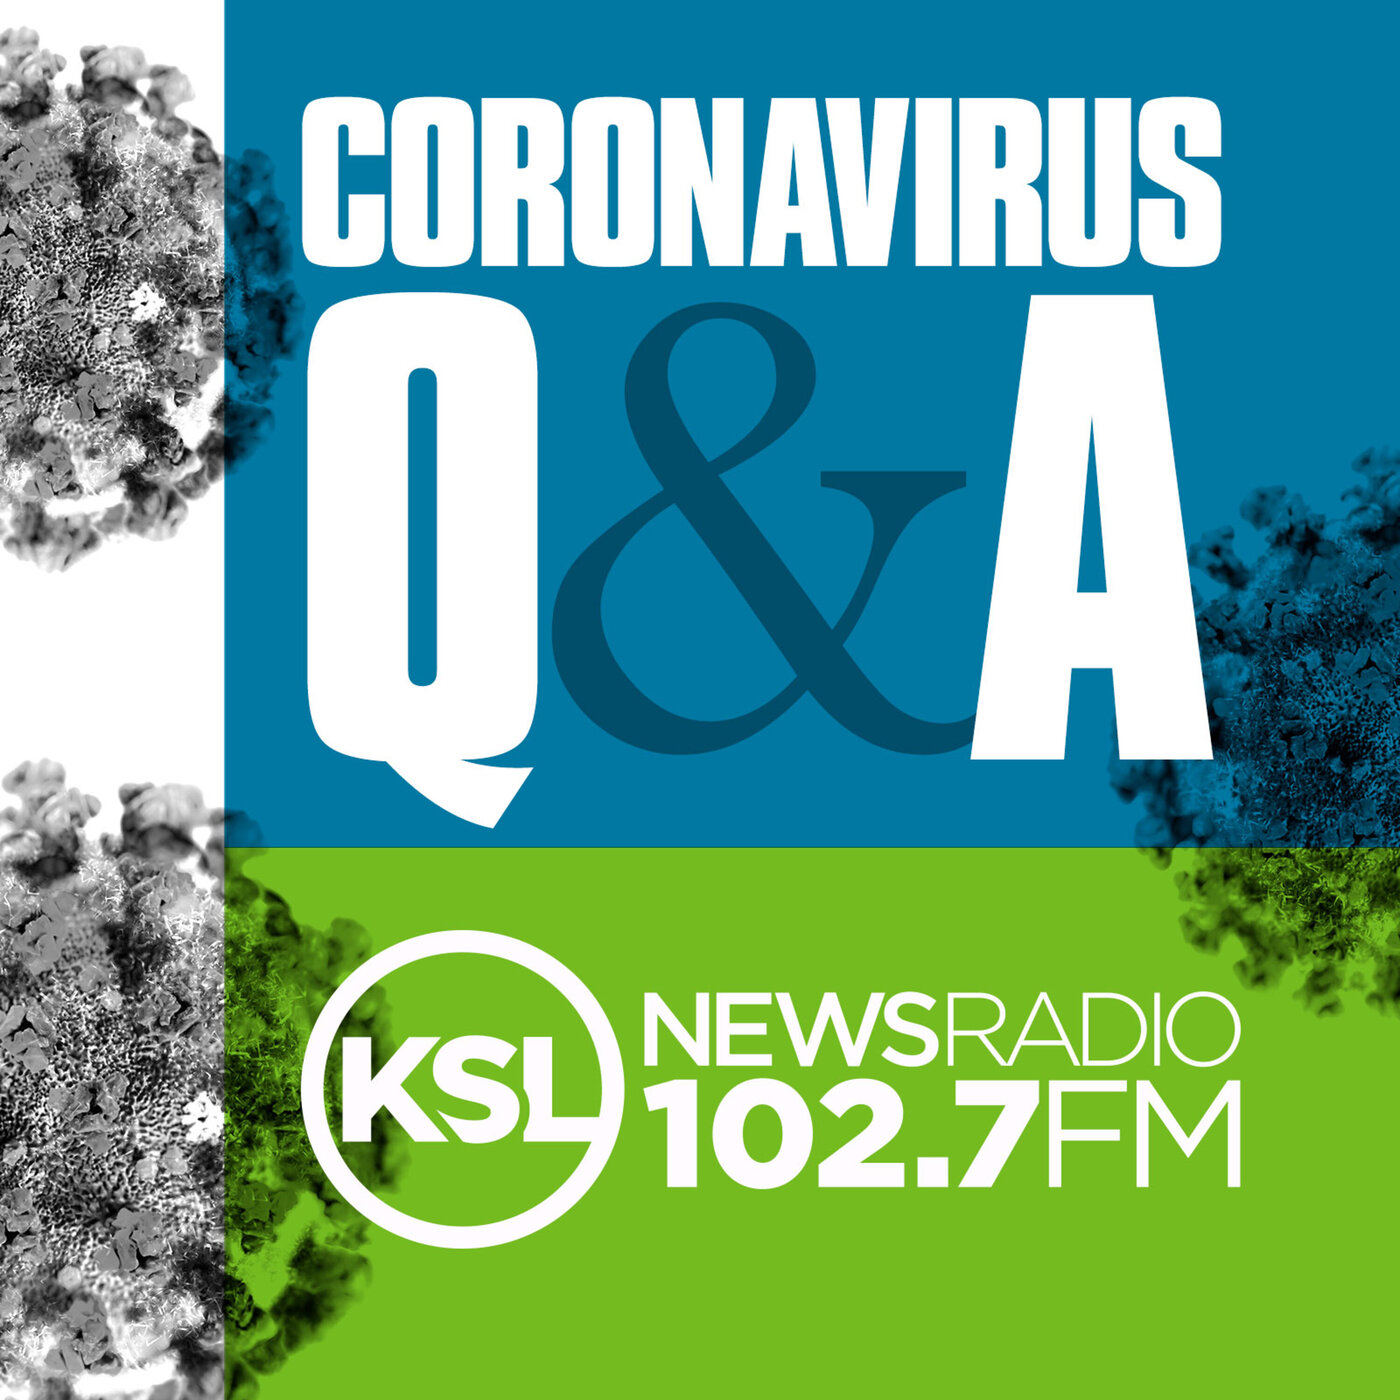 Coronavirus Update November 8th